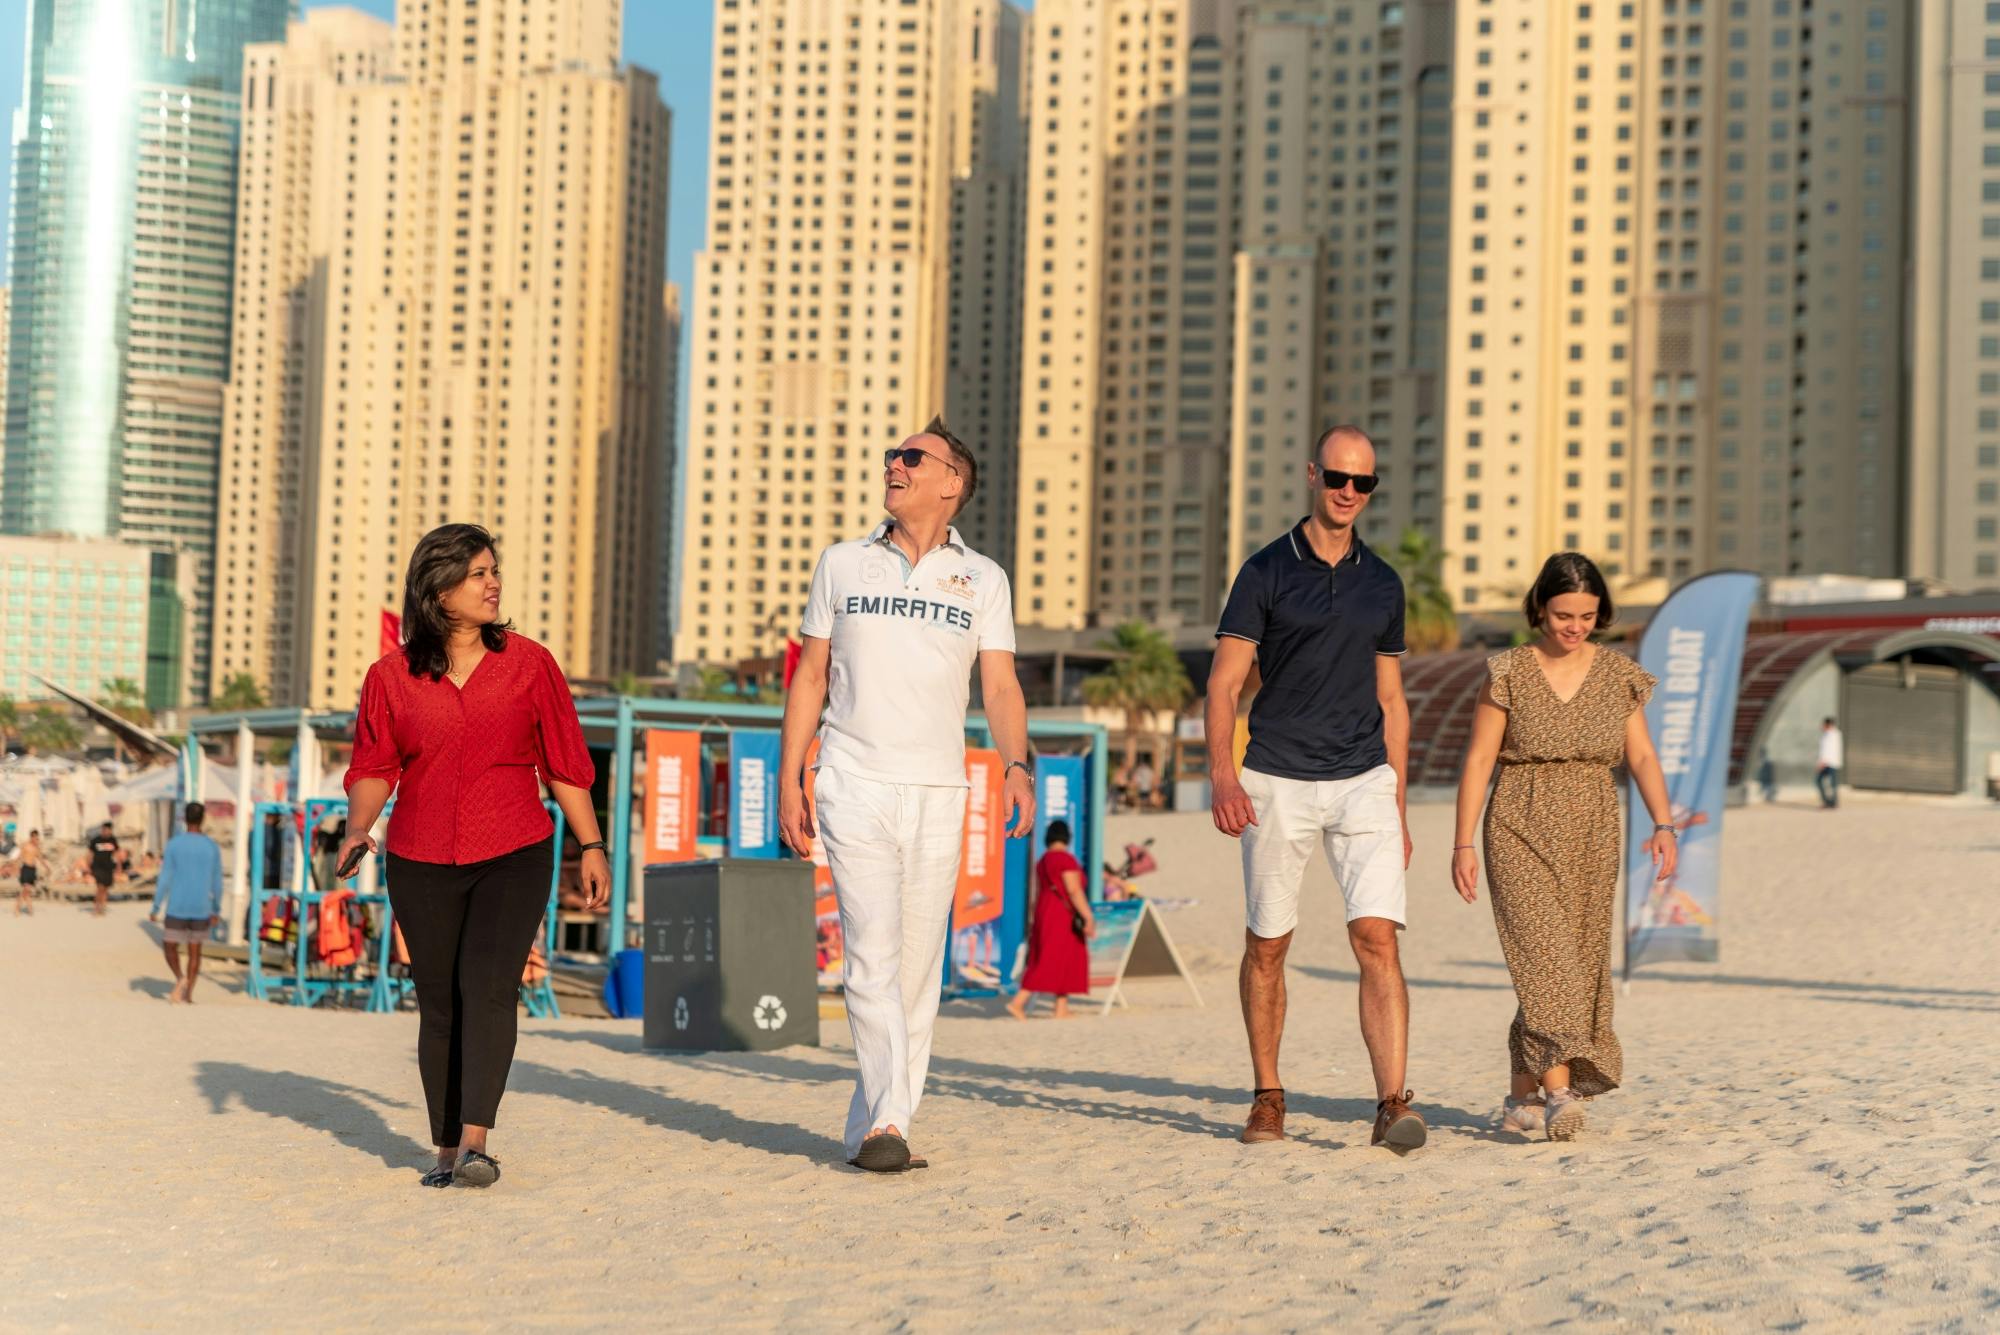 Geführter Rundgang durch Dubai Marina mit Verkostung